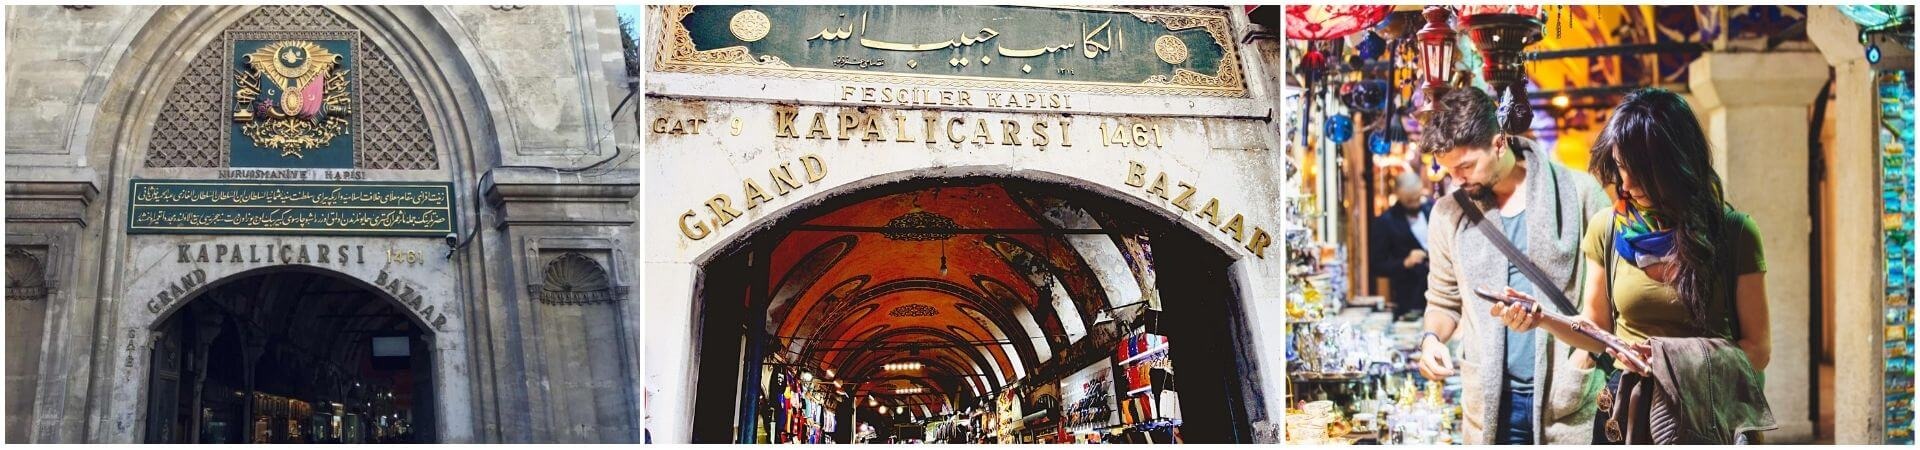 Obilazak Grand Bazaara Istanbul